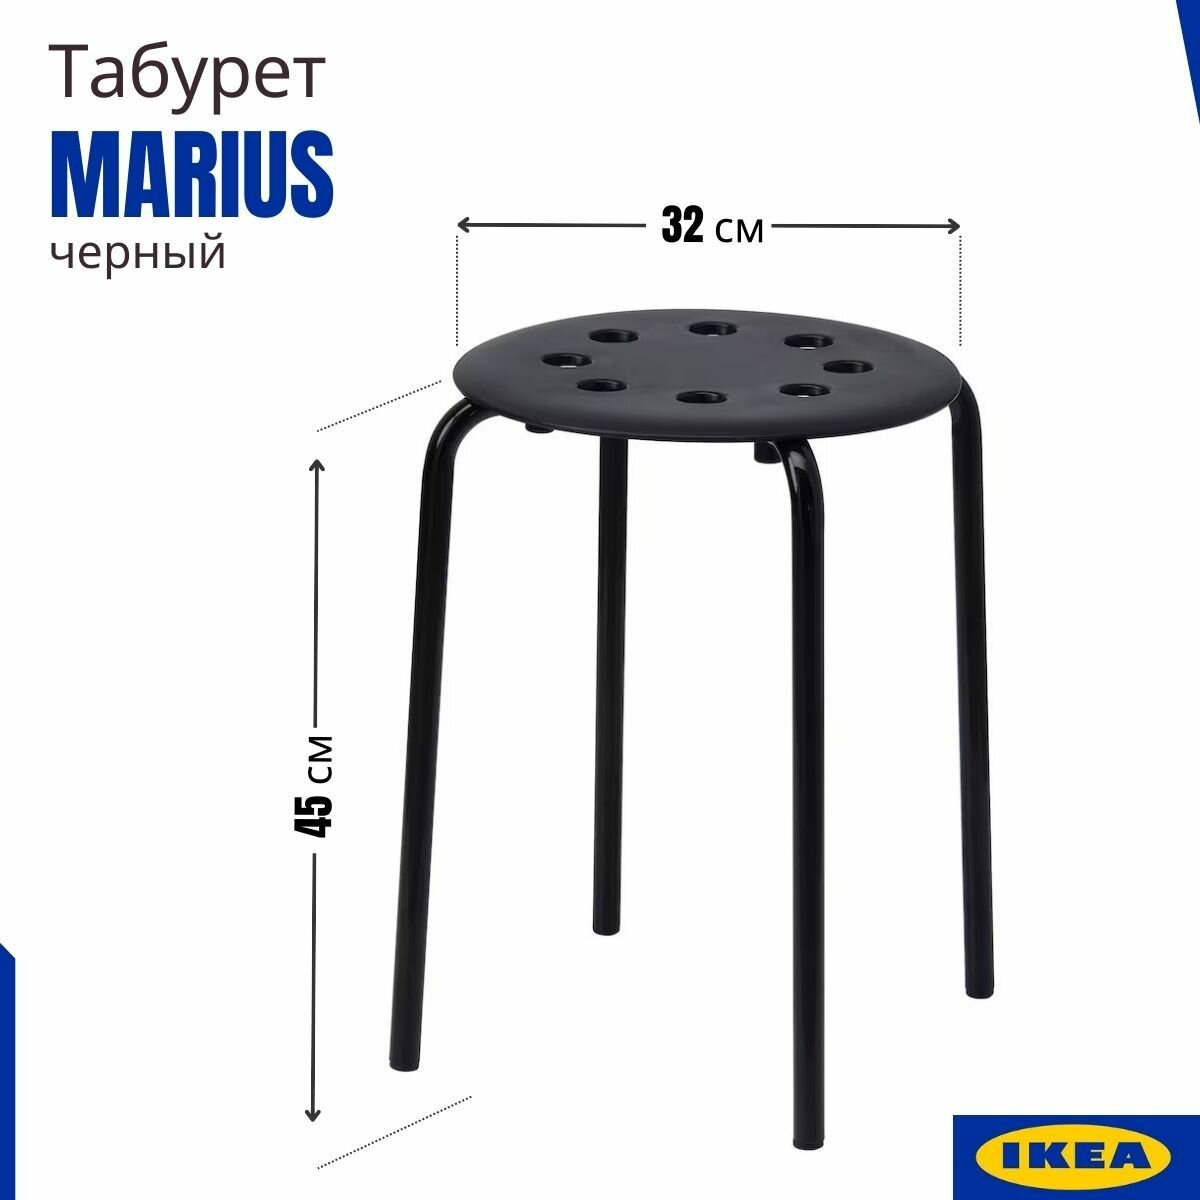 Табурет для кухни икеа Мариус, черный. Табуретка для кухни Marius IKEA, 1 шт, 45 см.